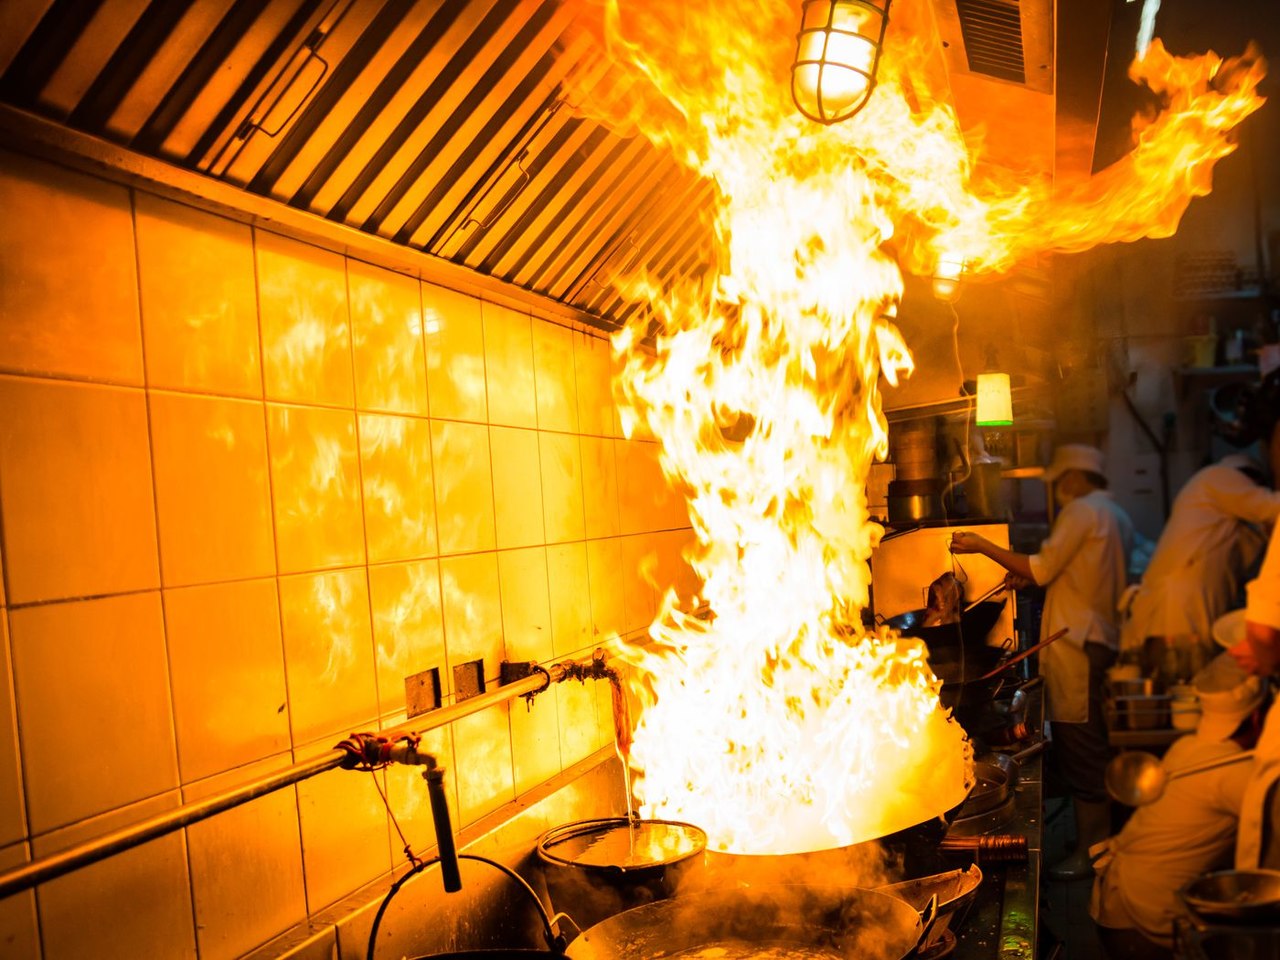 Controle de riscos previne incêndios em cozinhas industriais - Revista Incêndio